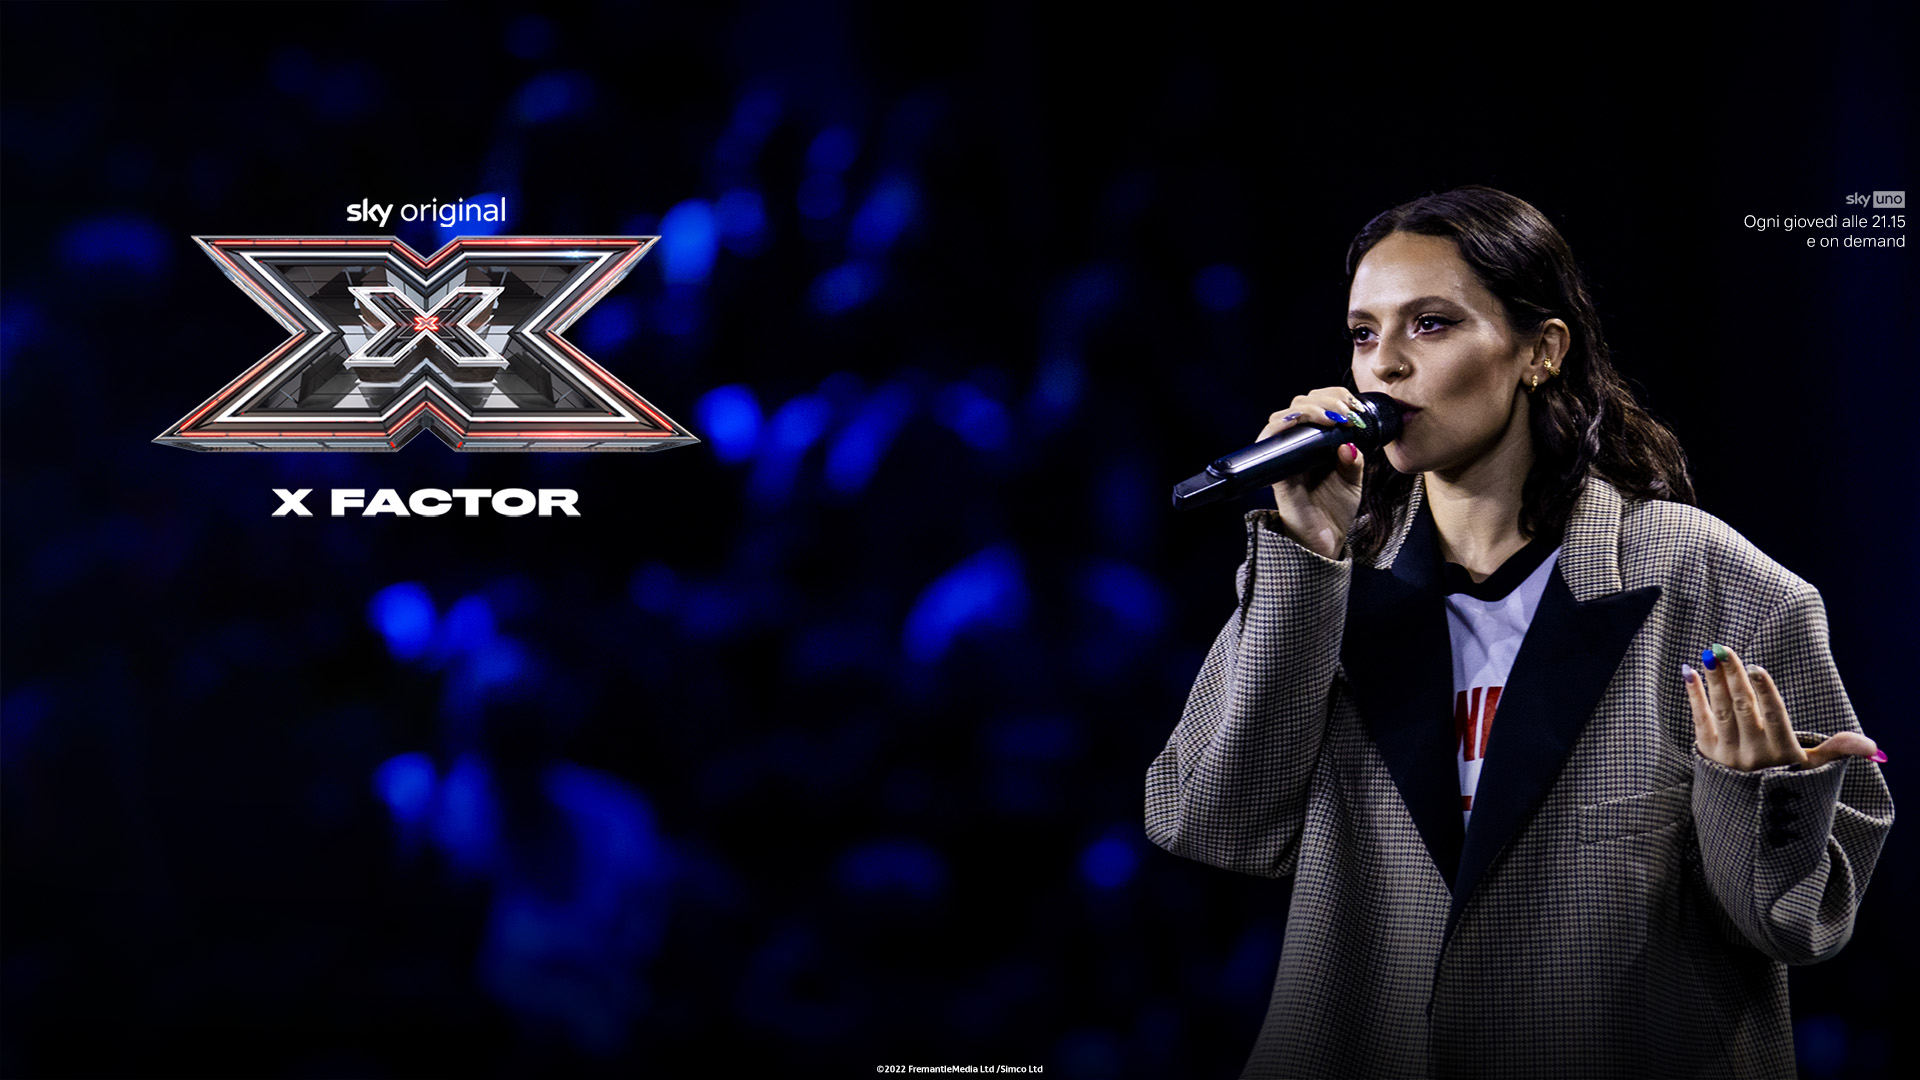 X-Factor 16, prima puntata. Parte anche sulla free la nuova edizione del talent show condotto da Francesca Michielin, in prima serata su Tv8